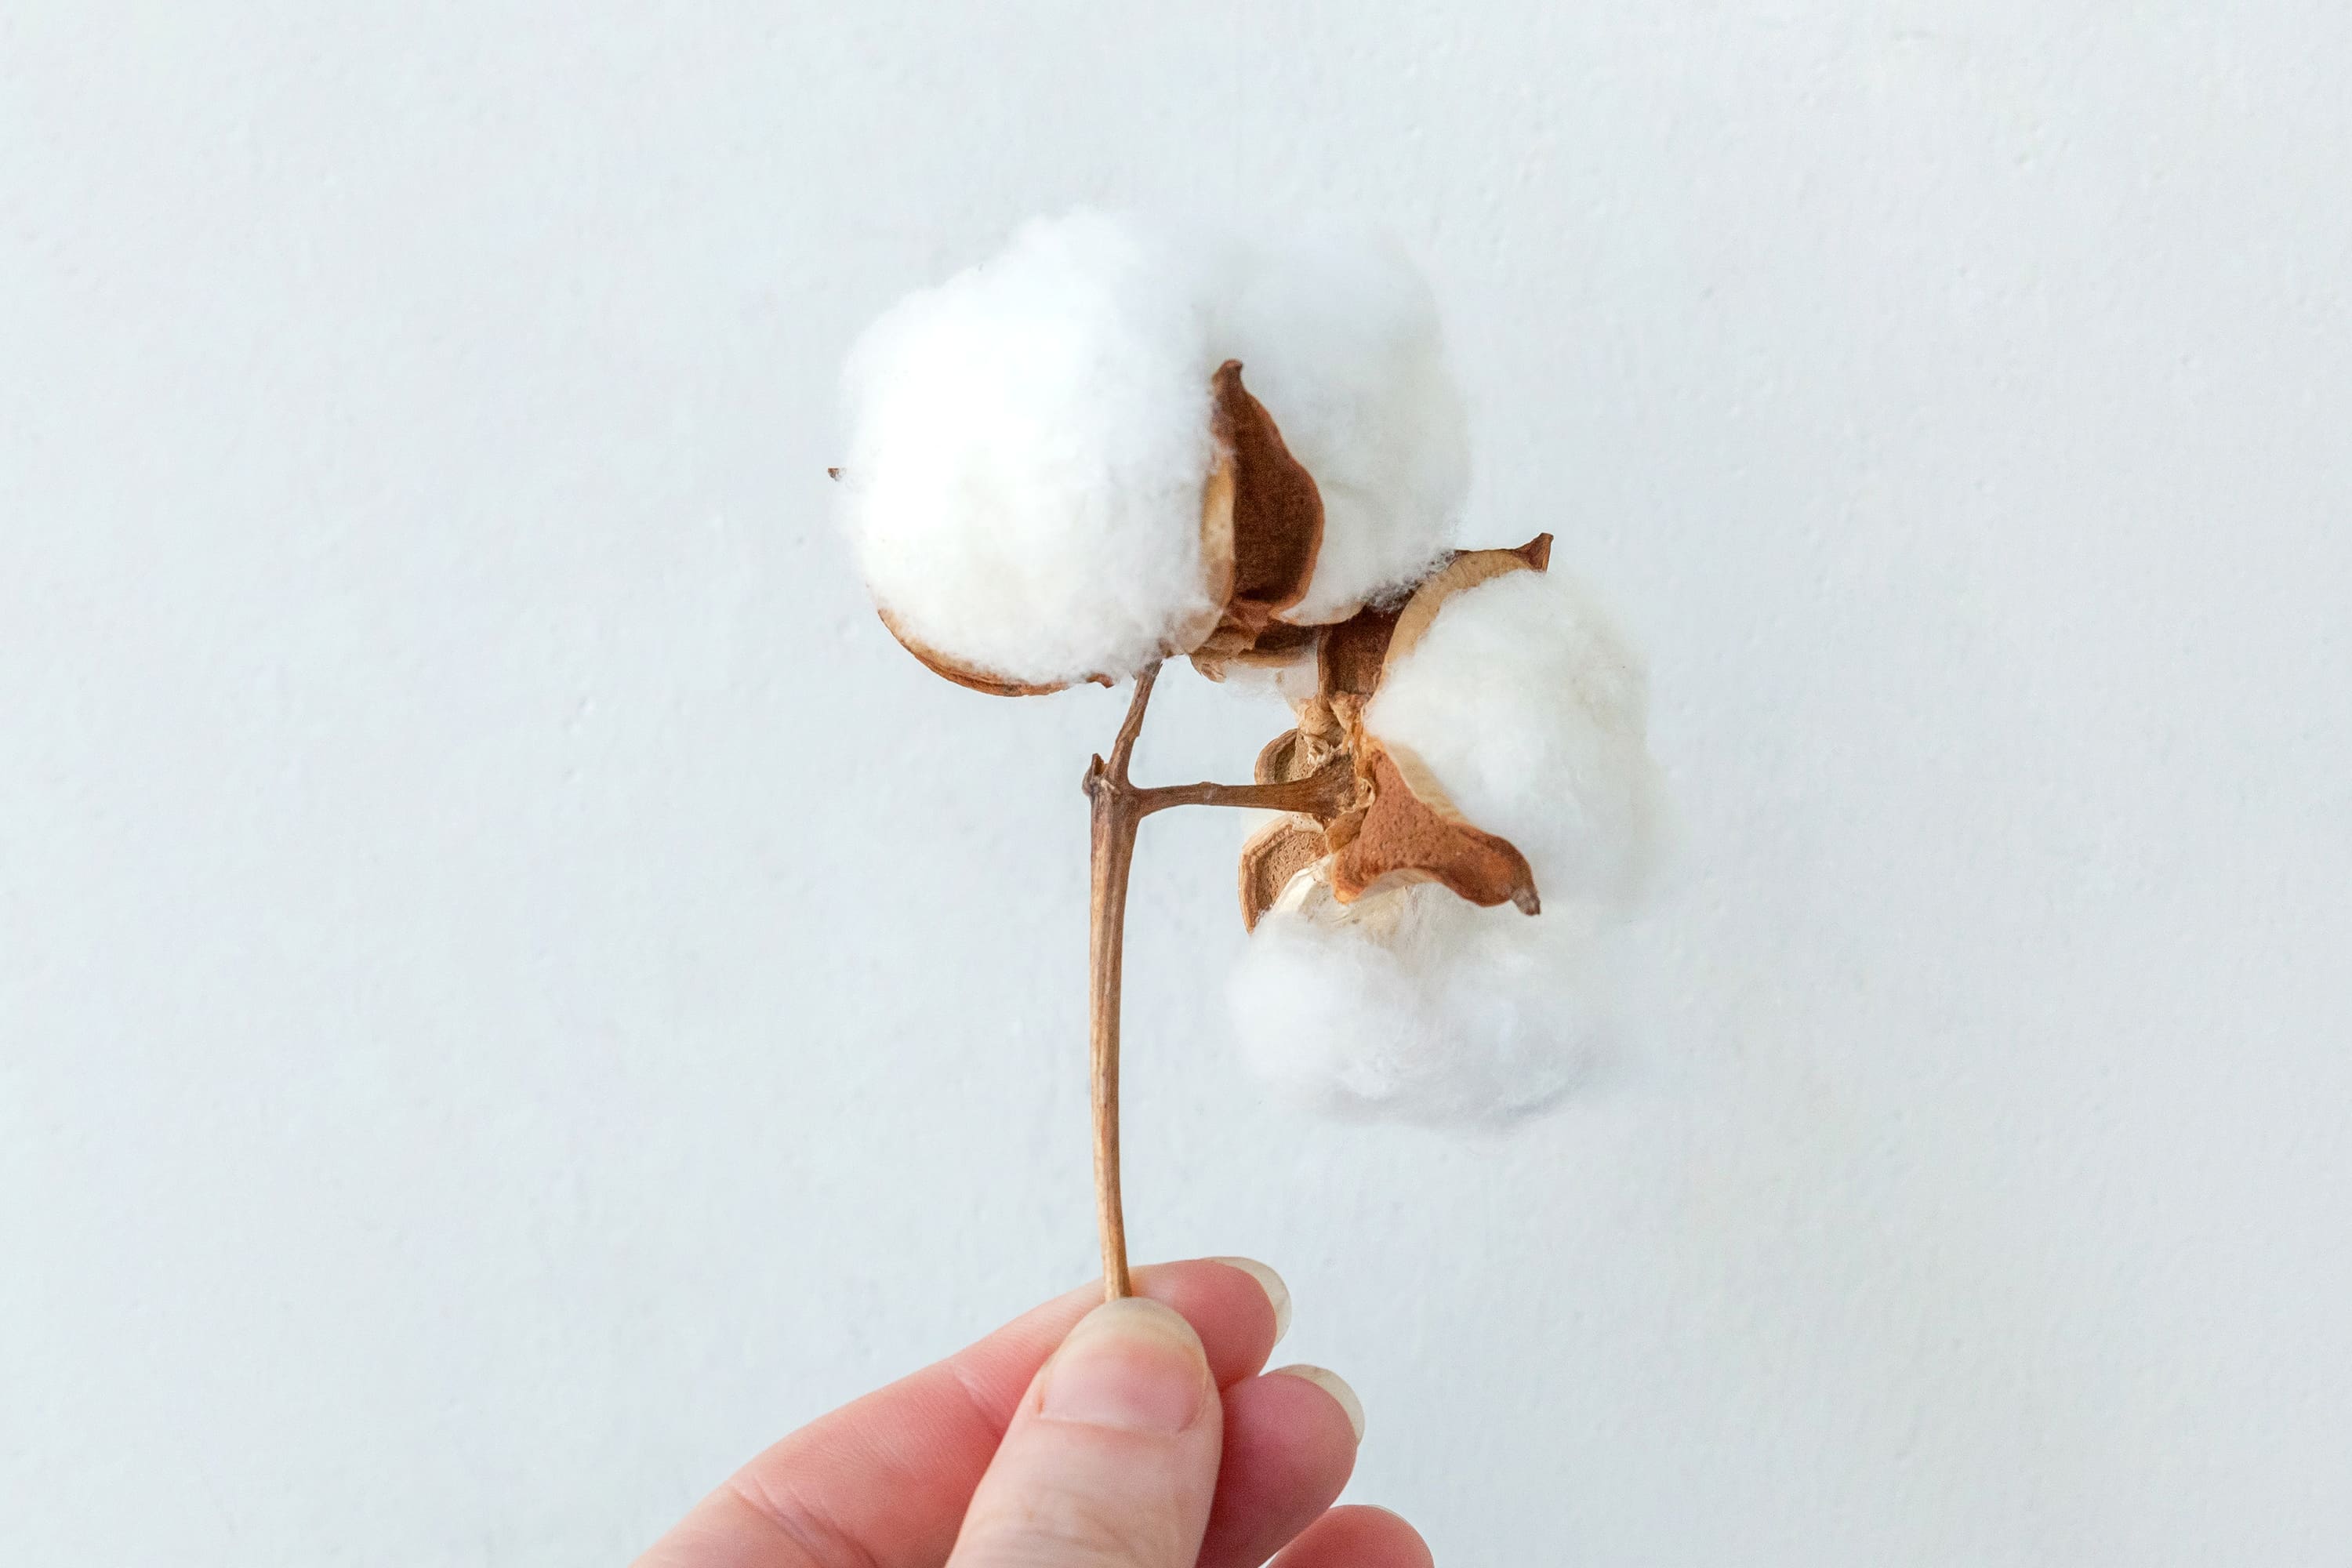 スーピマコットンとは？スーピマコットンとは最高級ランクの上質綿で、産地はアメリカの一部の州のみ。世界の綿の生産量の1%にも満たず希少性の高い綿です。この綿で織られた生地は、しなやかでやわらかく、滑らかな肌触りが一番の特徴です。